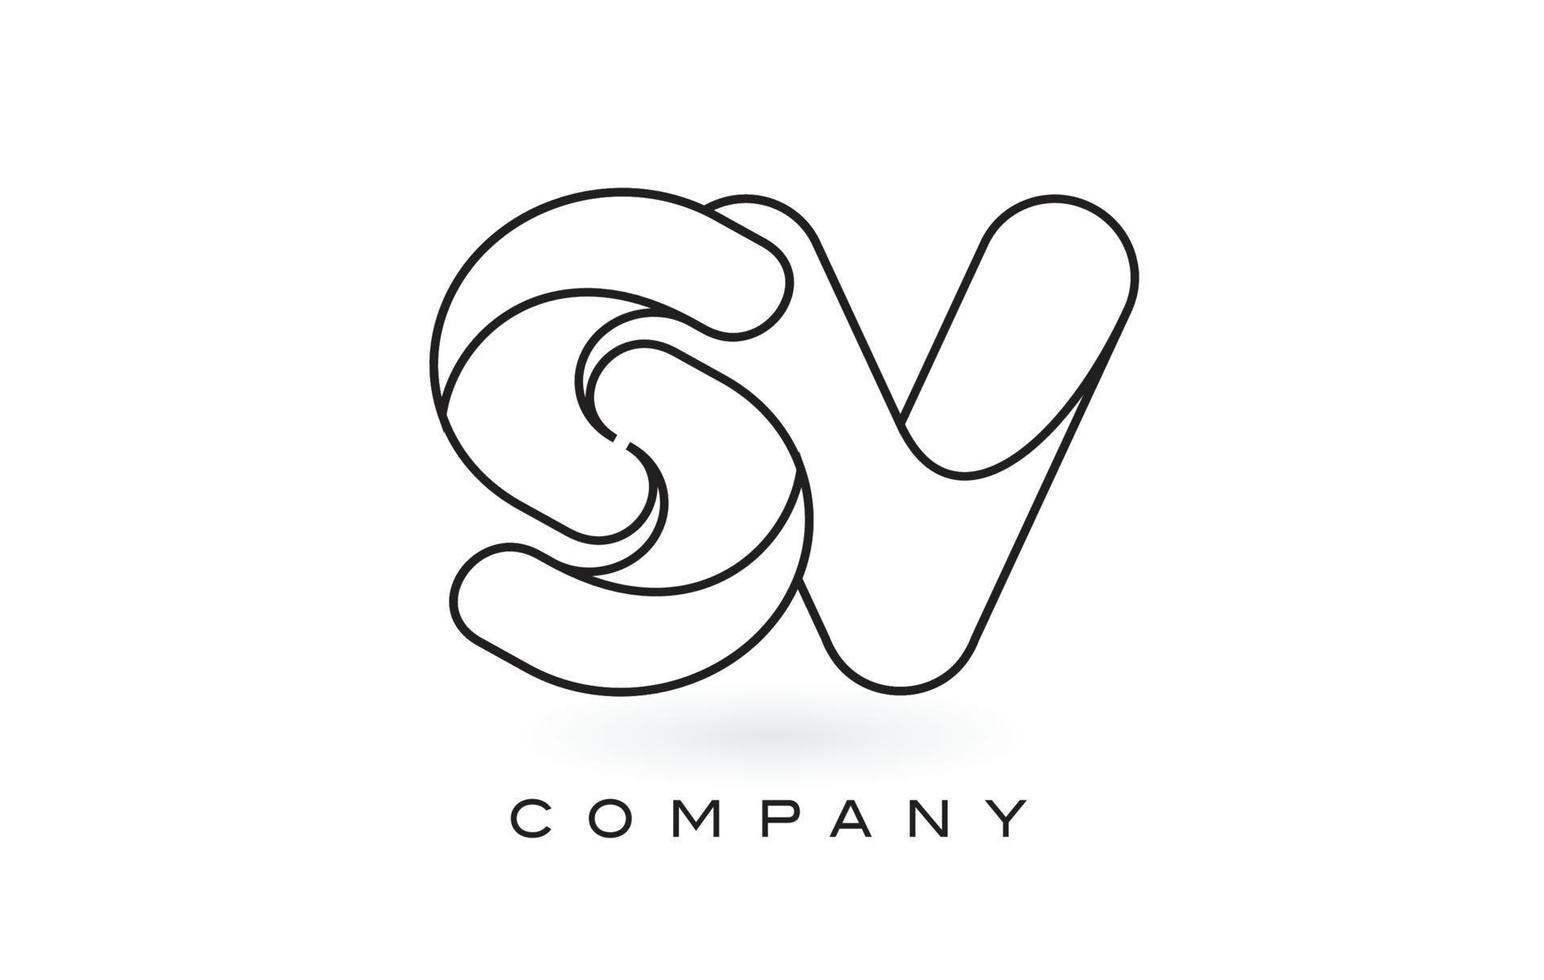 Logotipo de letra de monograma sv con contorno de contorno de monograma negro fino. vector de diseño de carta de moda moderna.